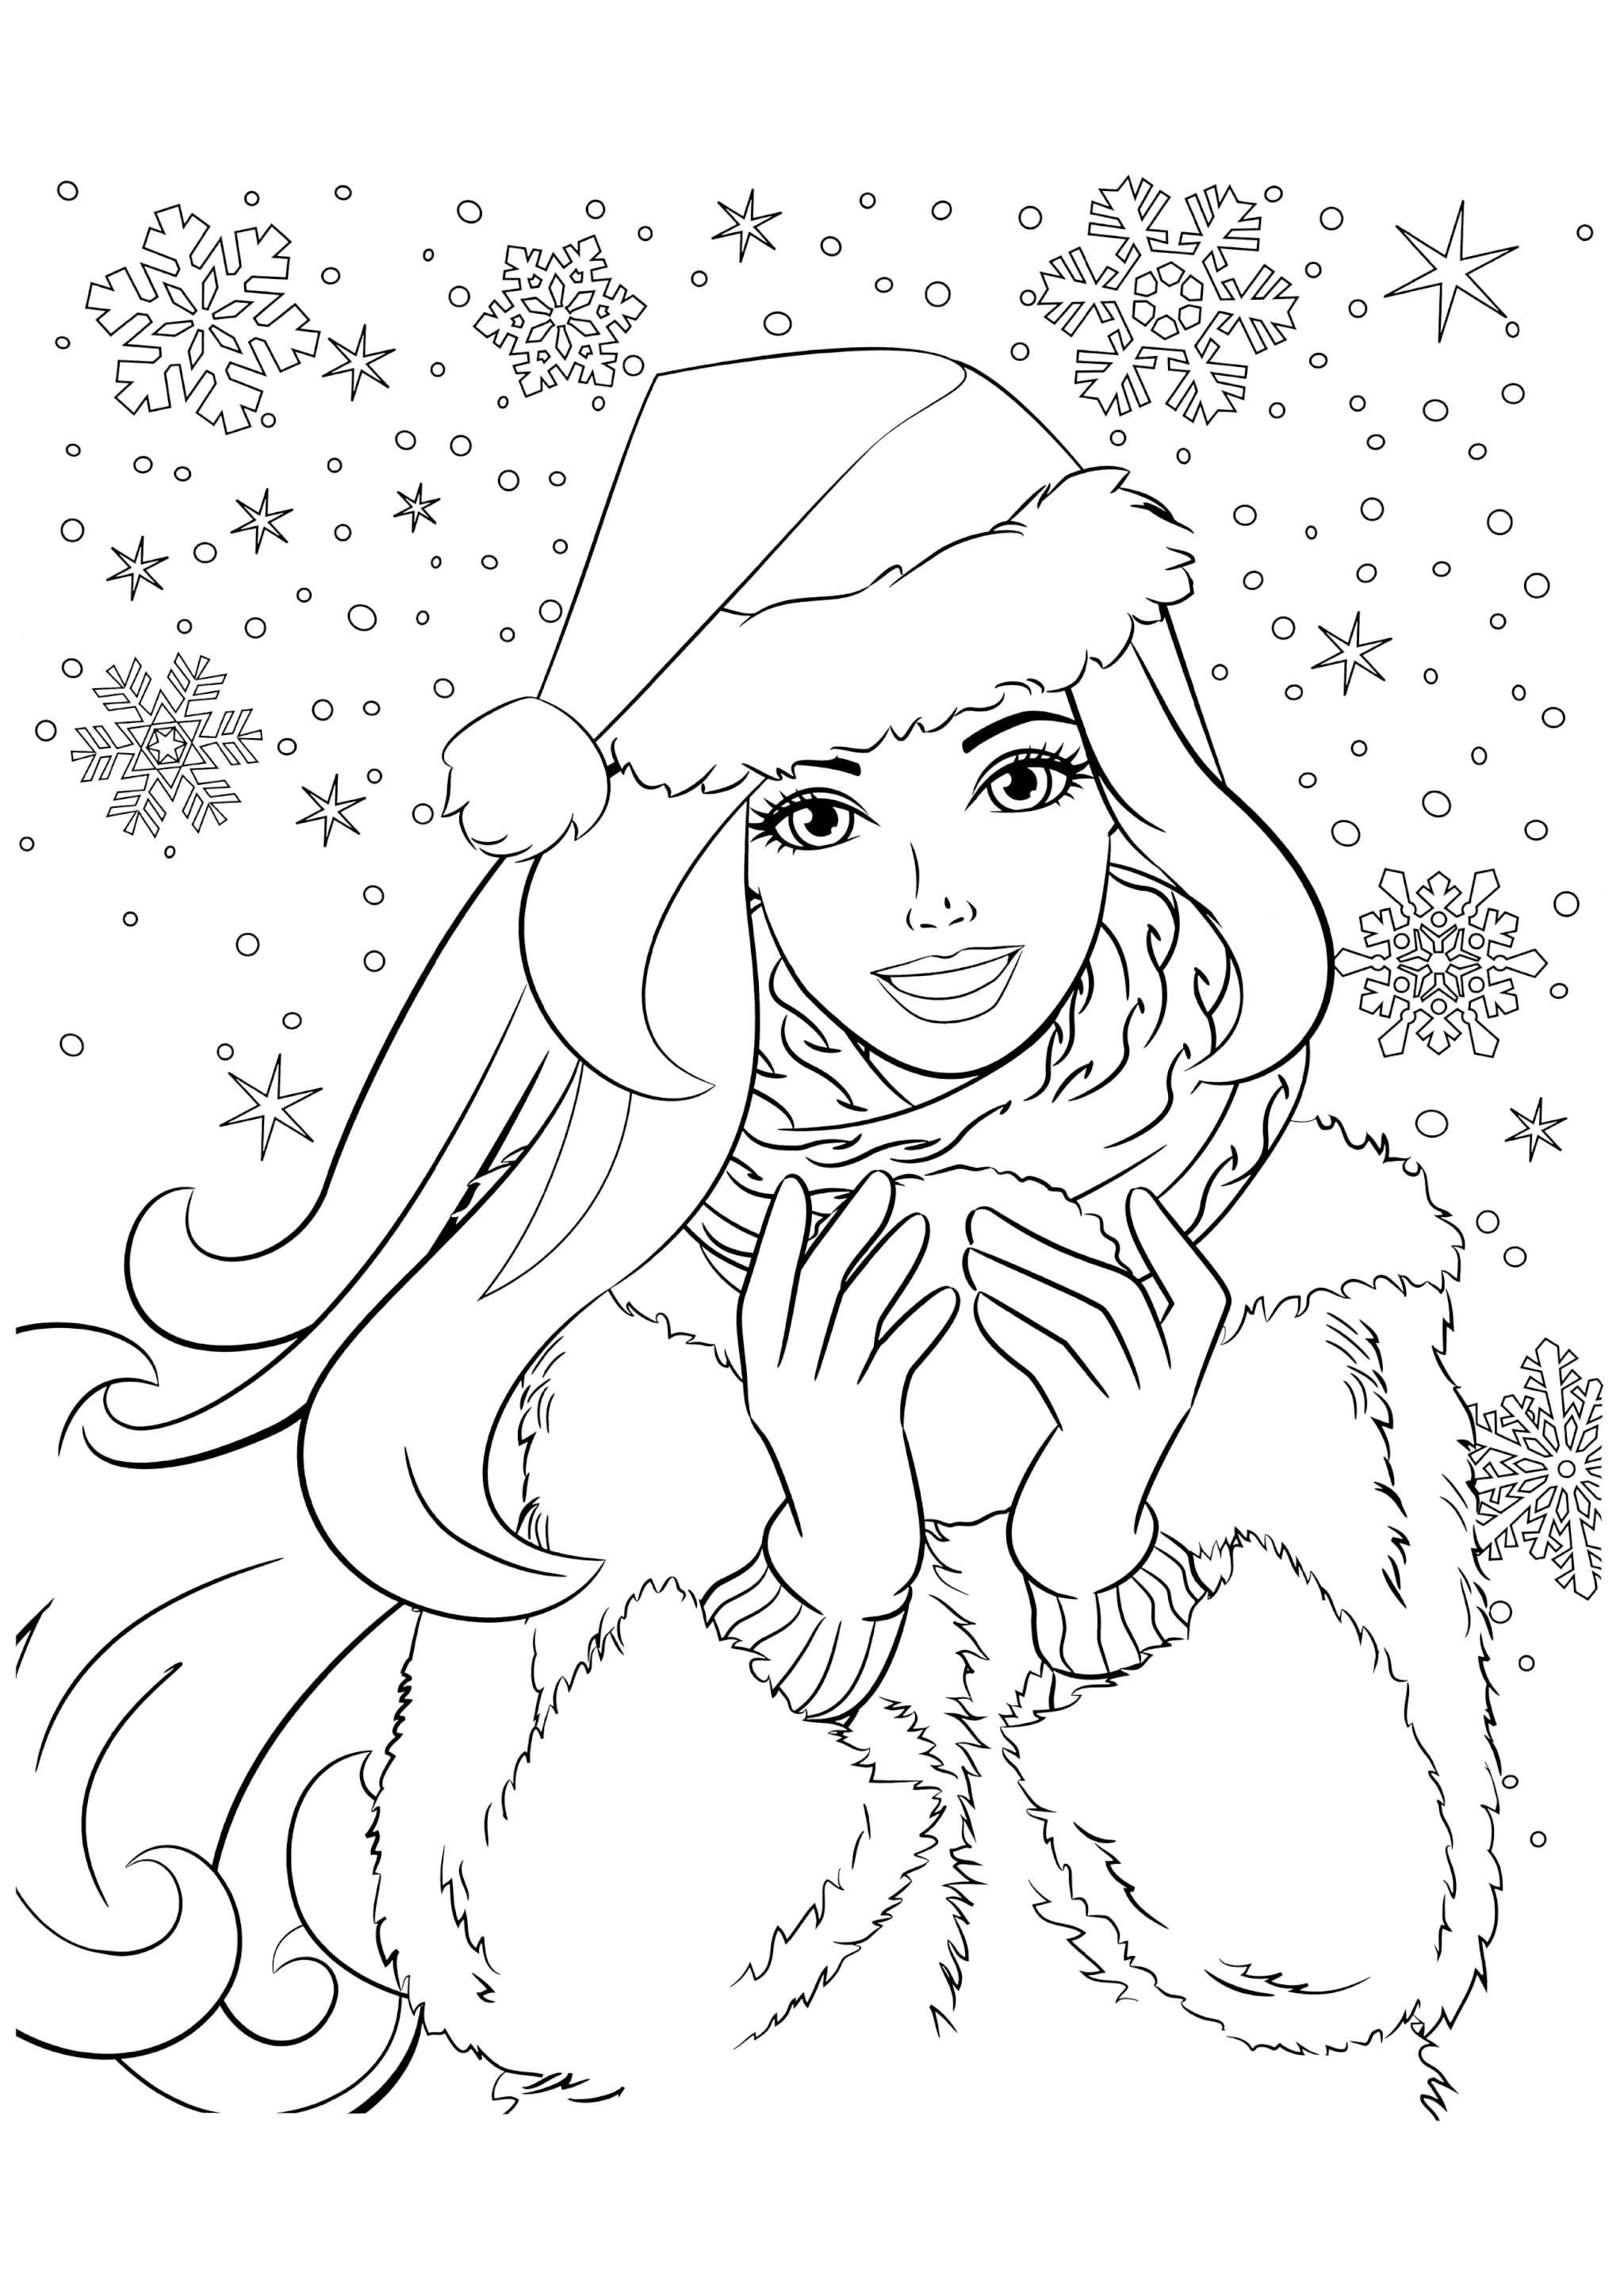 Раскраска Барби со снежком в руках